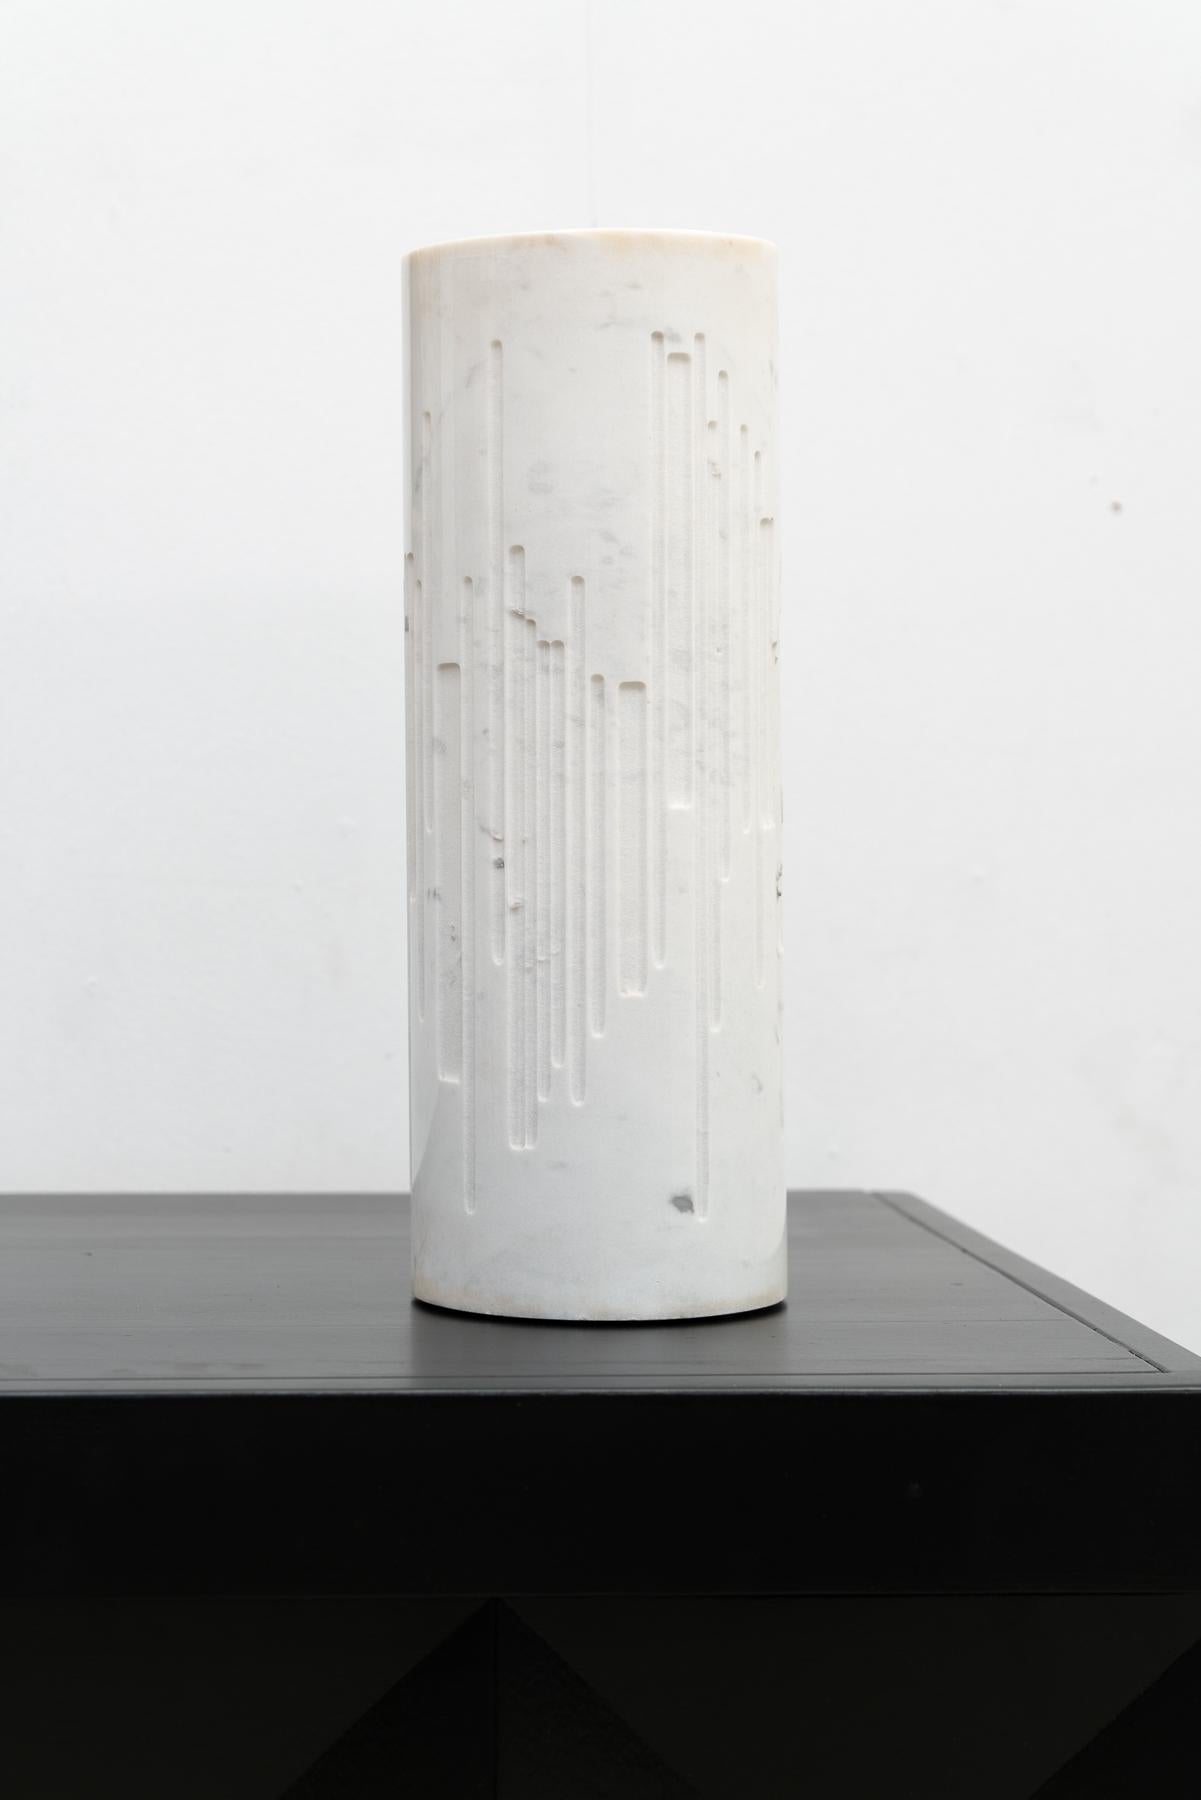 Zylindrische Tischleuchte aus Marmor von Gruppo NP2, hergestellt in Italien. Diese Leuchte zeichnet sich durch ein ausgehöhltes, graviertes Röhrendesign aus Calacatta-Marmor aus, das das Licht anmutig durchscheinen lässt.

mit seinem